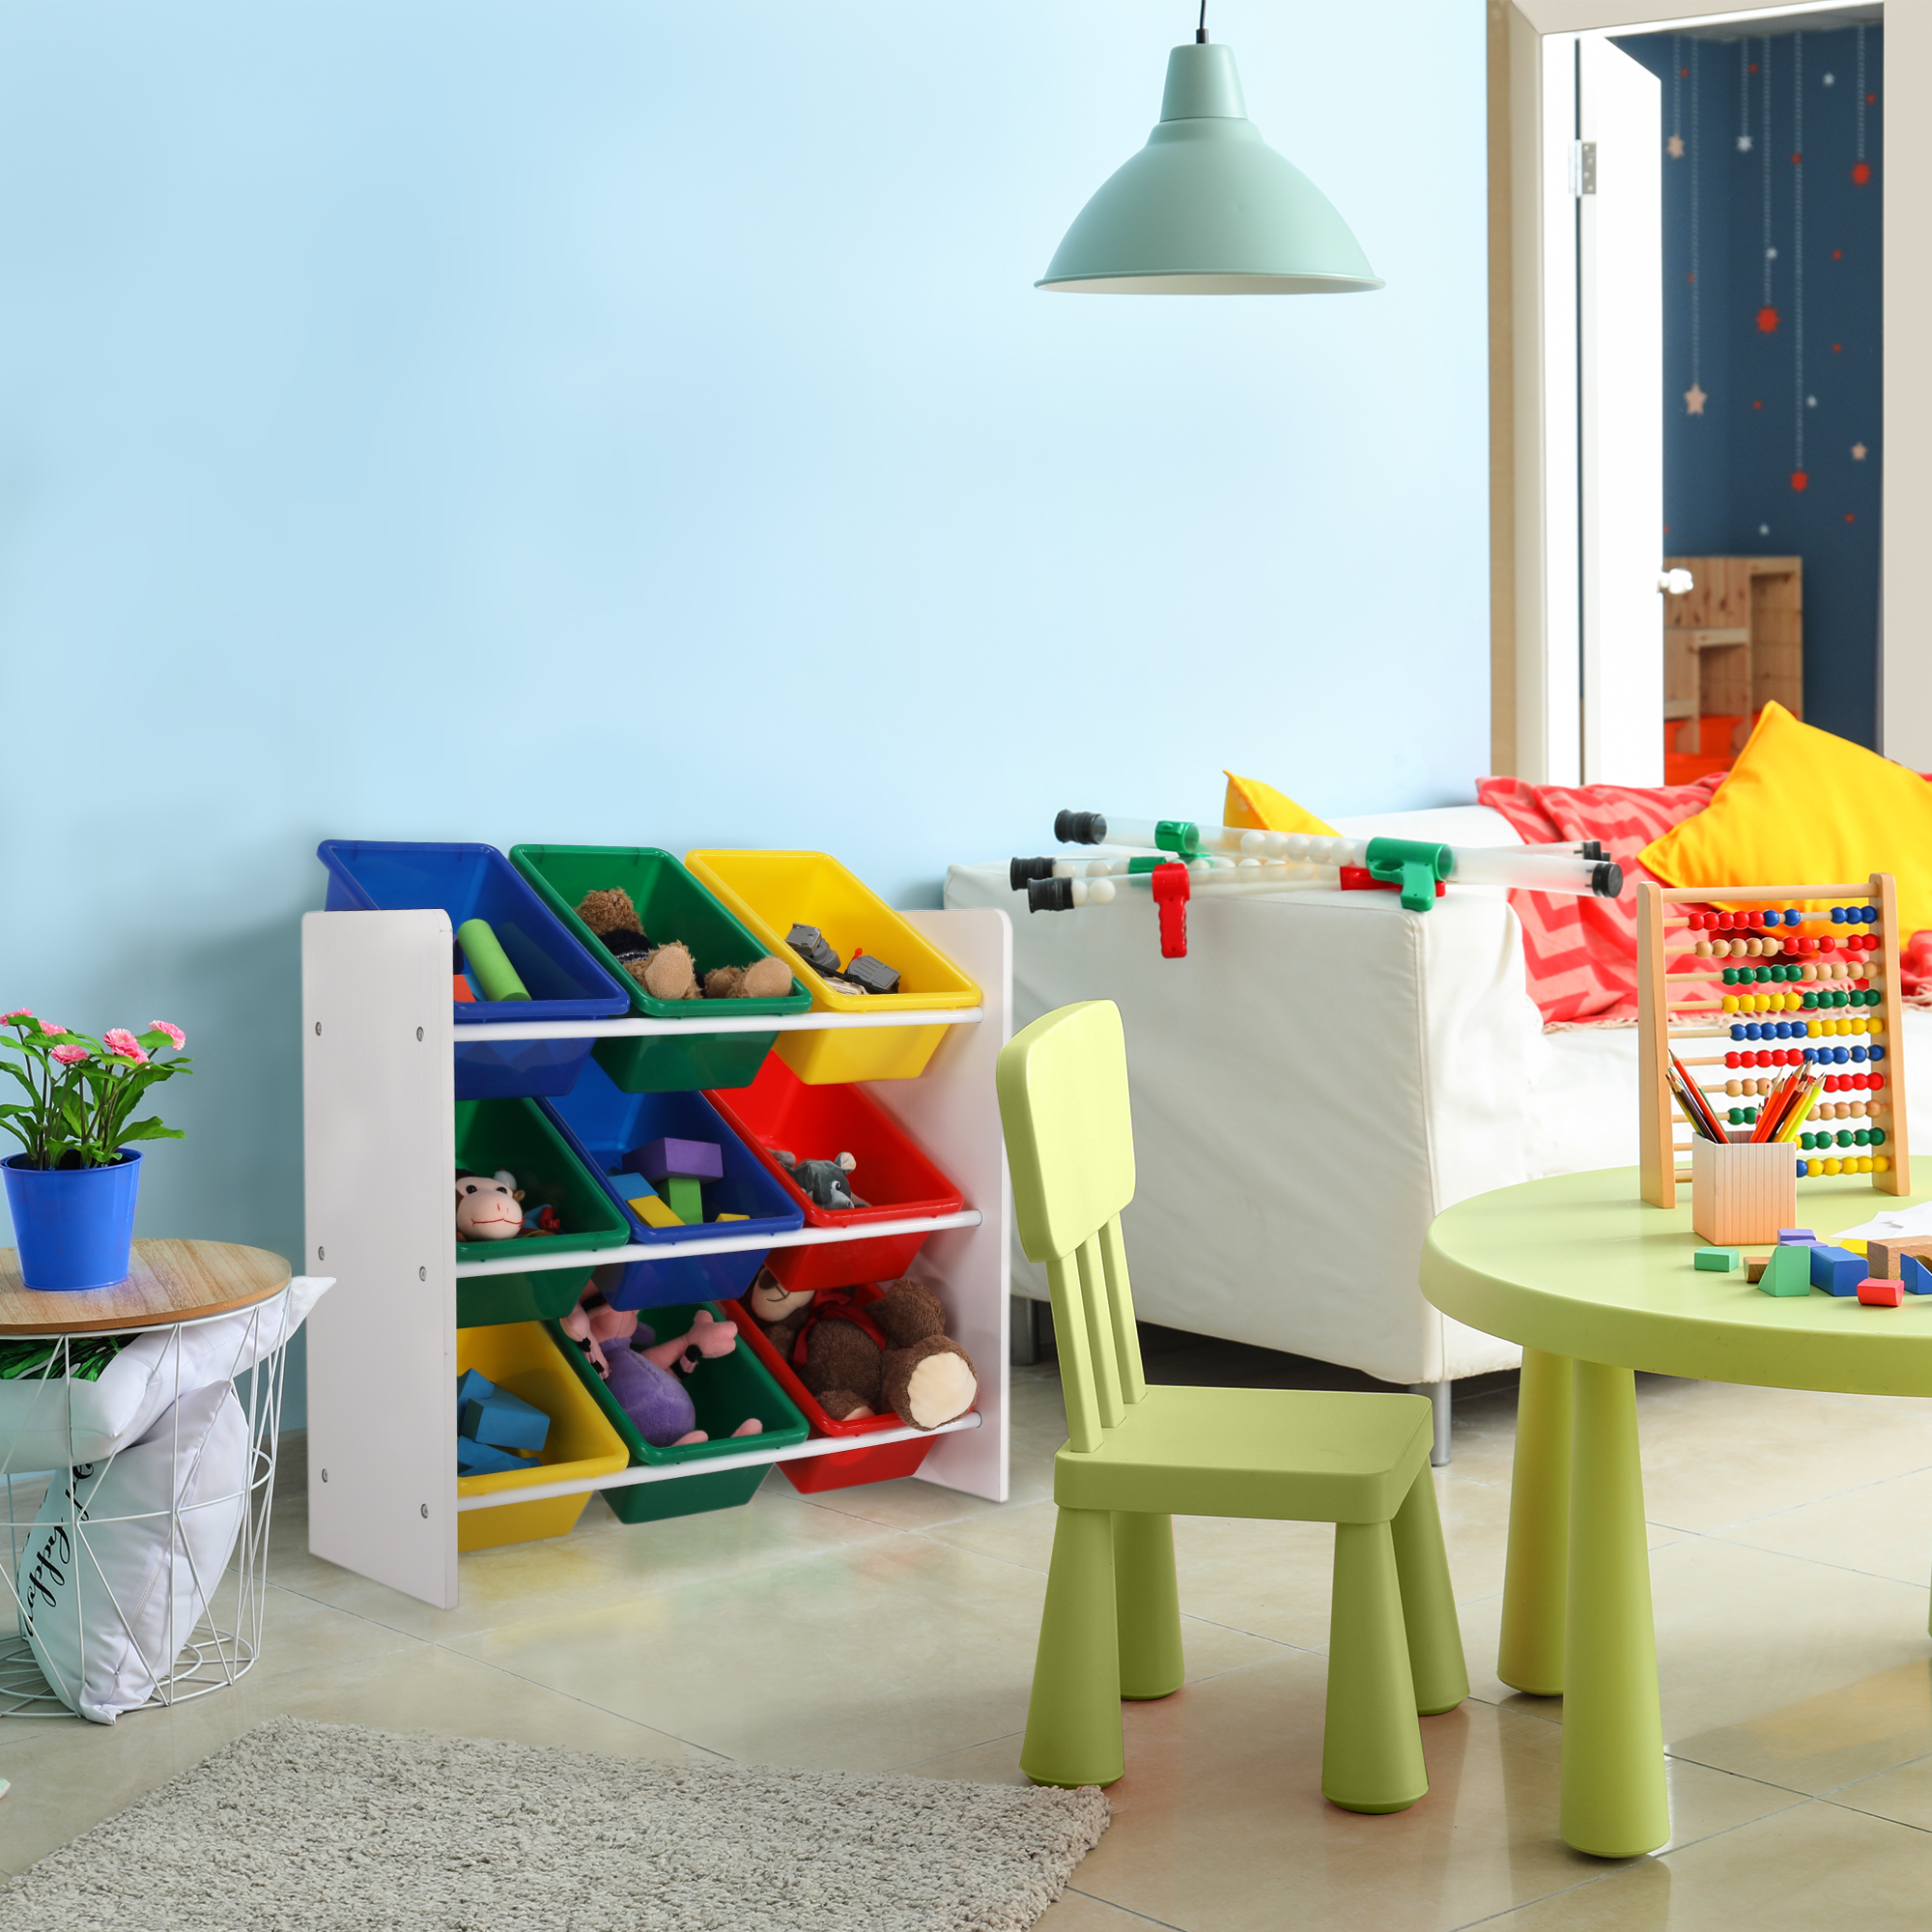 Organizator de jucării, multicolor / alb, KIDO TYPE 2